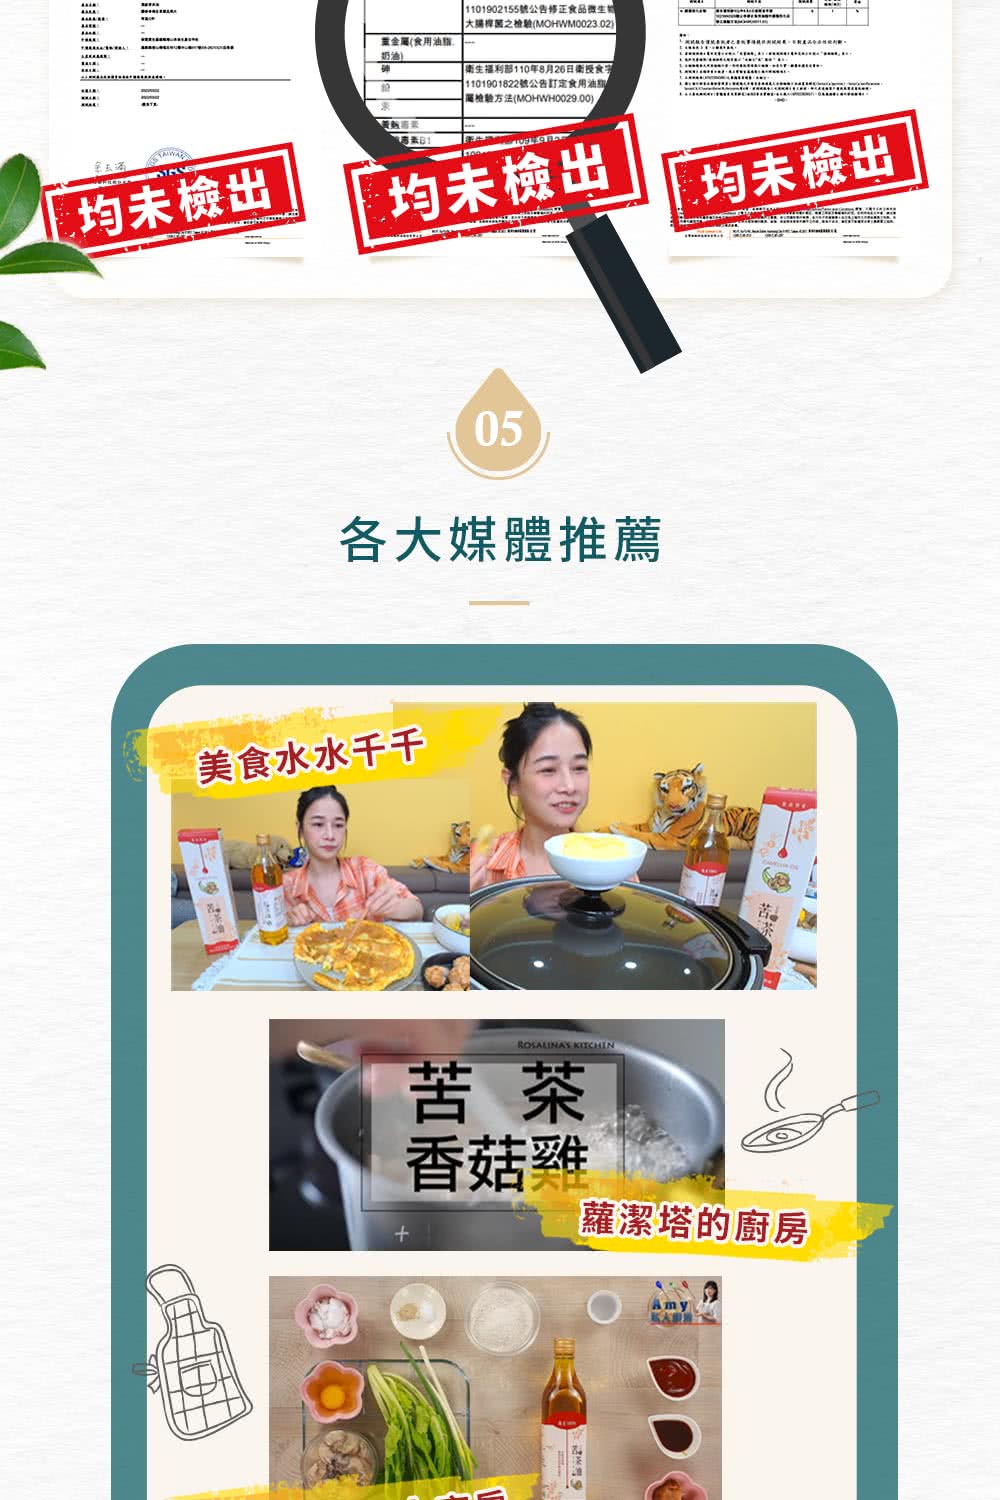 湖社台灣版亜熱量化书倒事項提防扒技術展,不對產品分法相關。